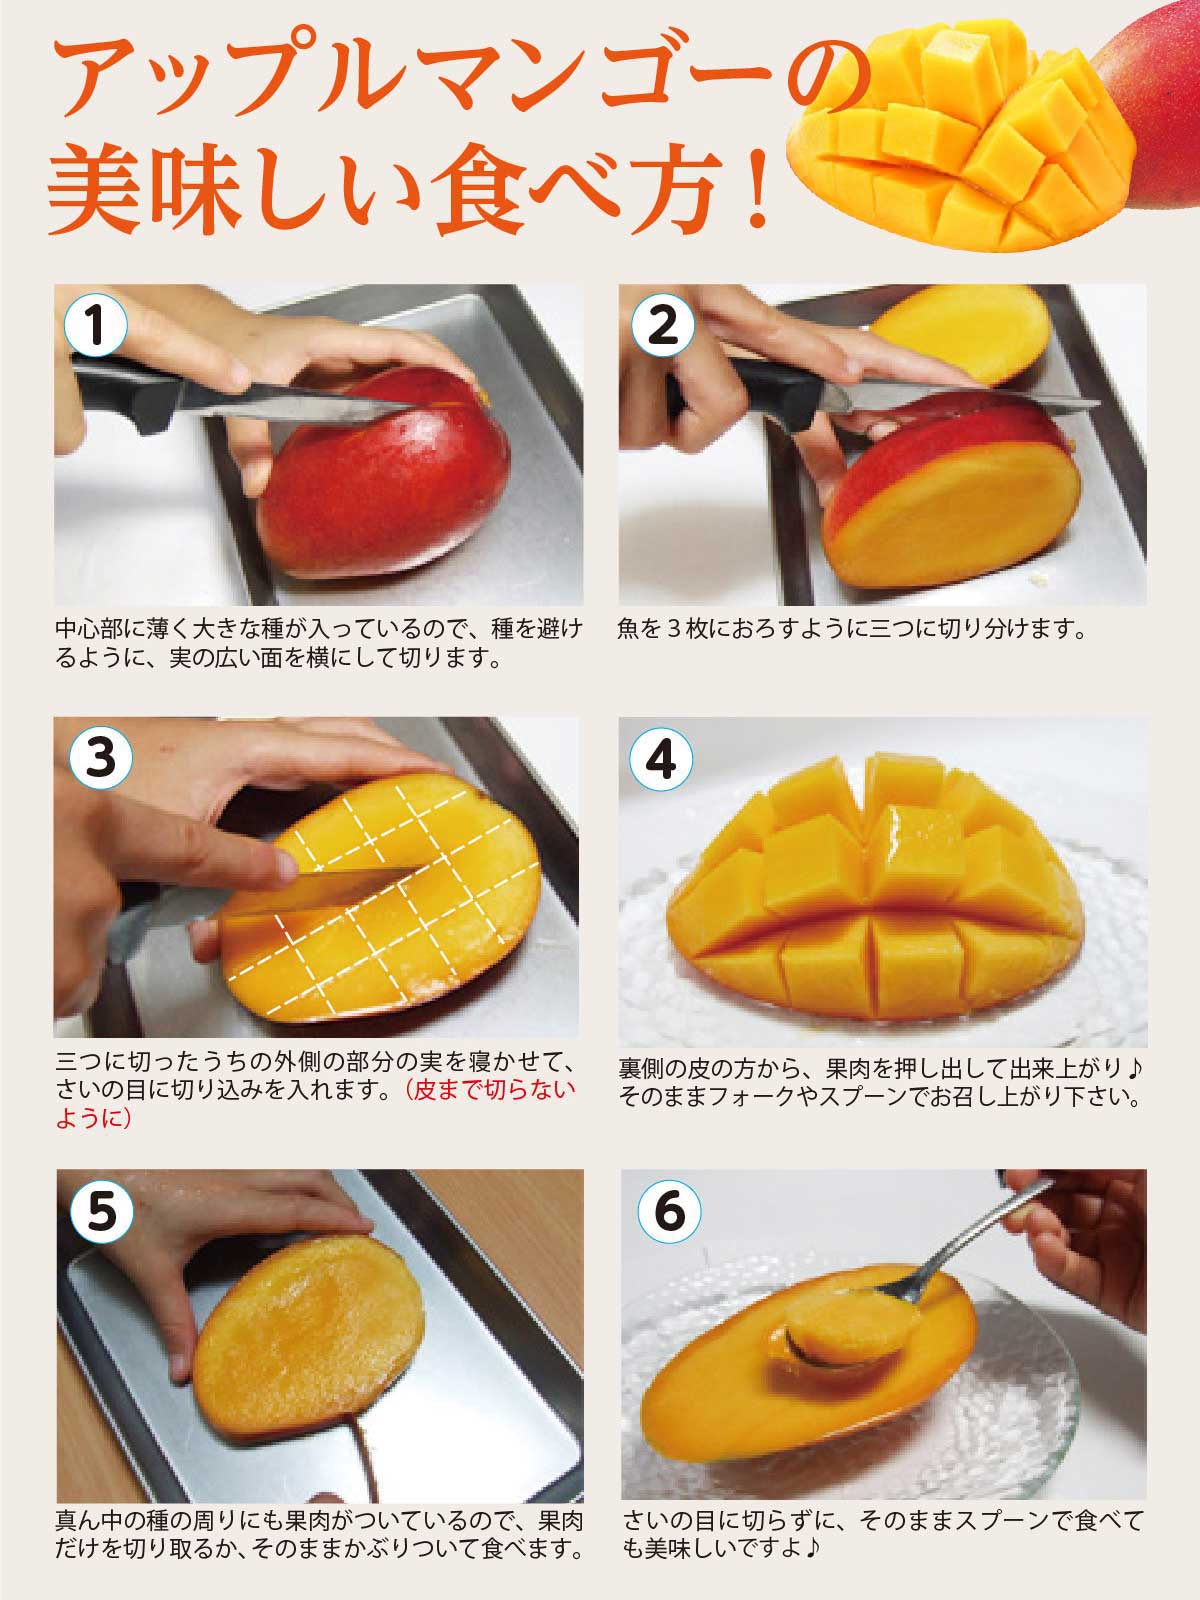 沖縄産アップルマンゴー